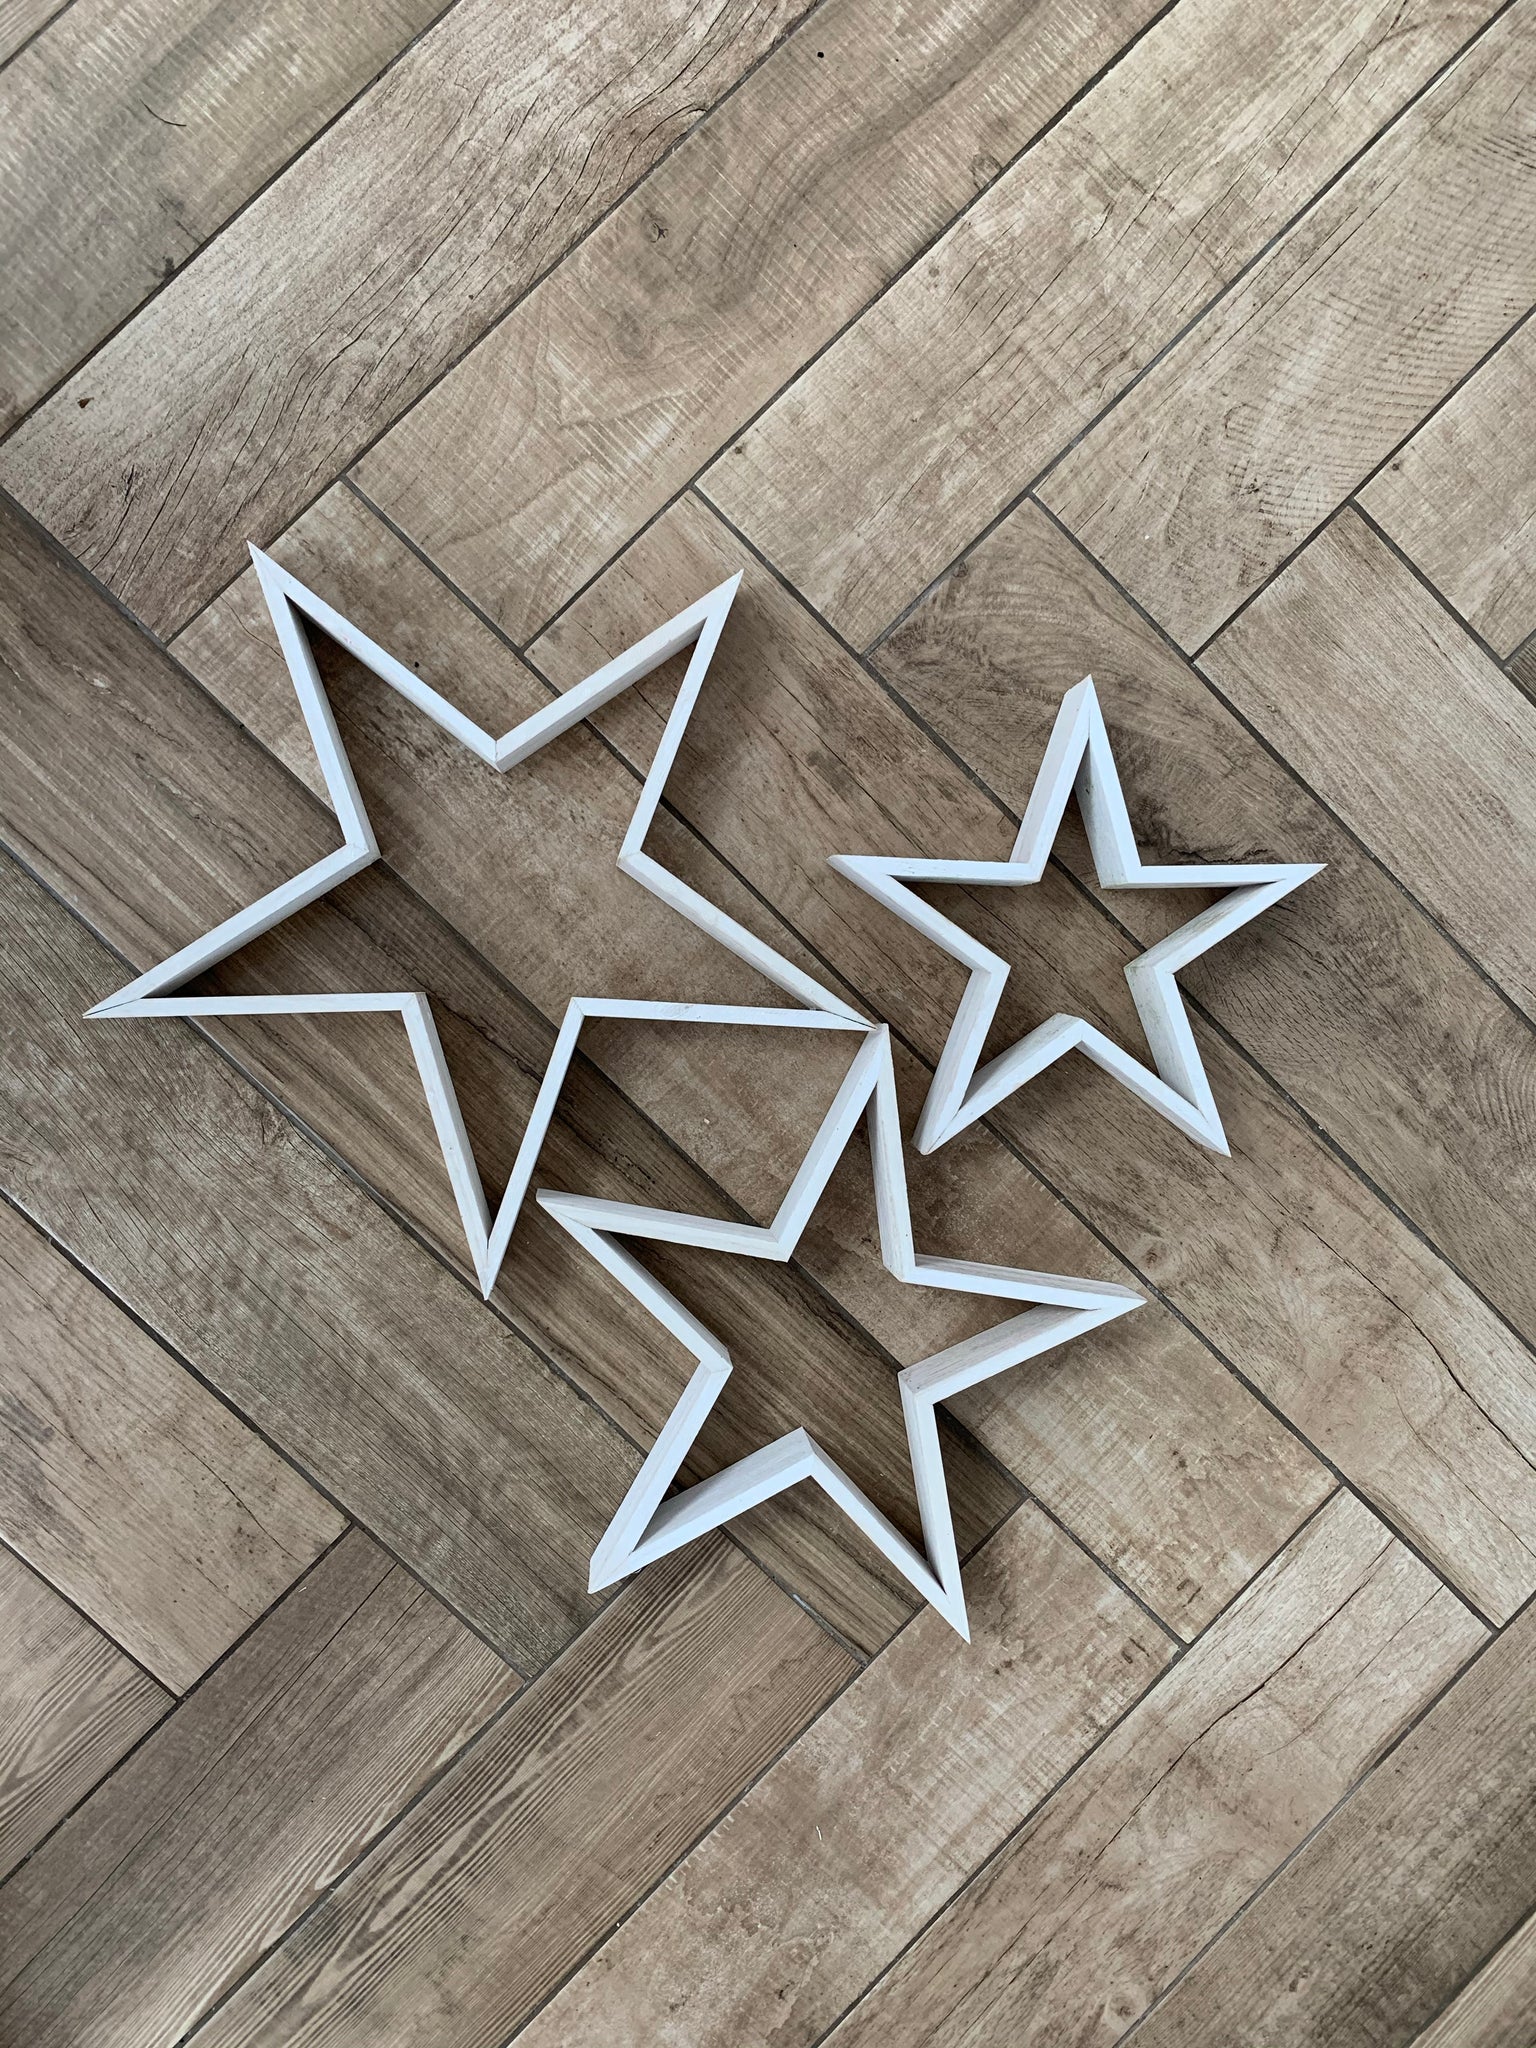 Wooden Stars – Of Starlight Designs